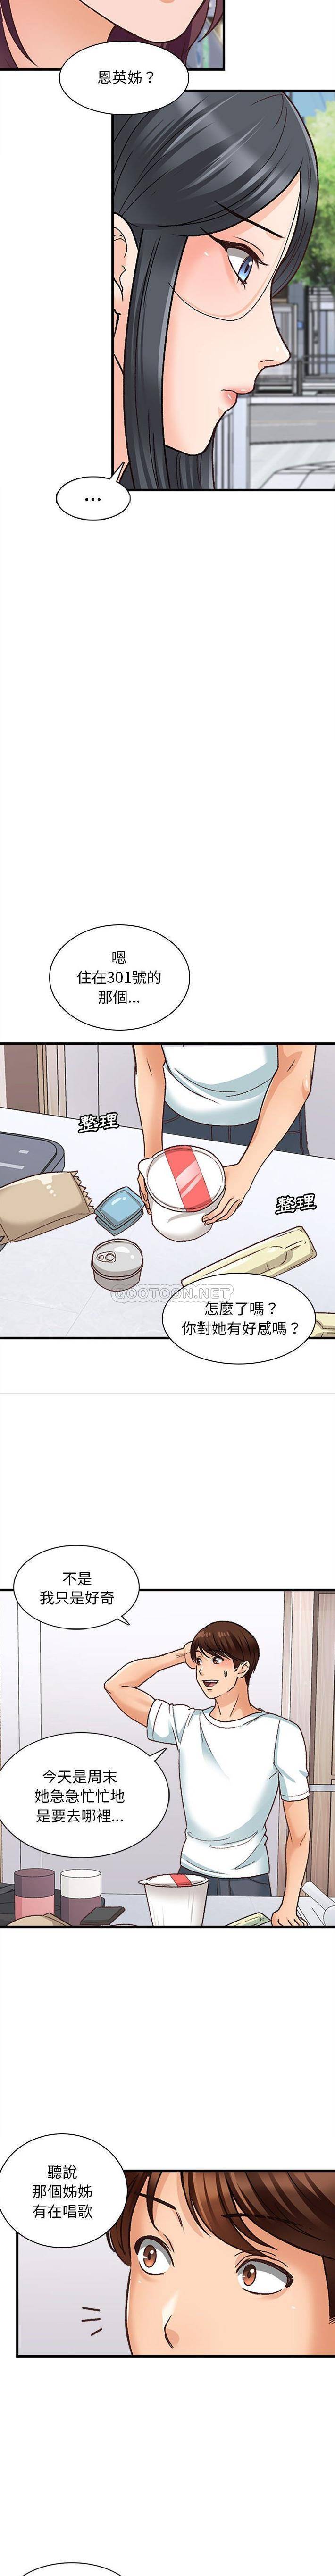 韩国污漫画 幸福公寓 第10话 9